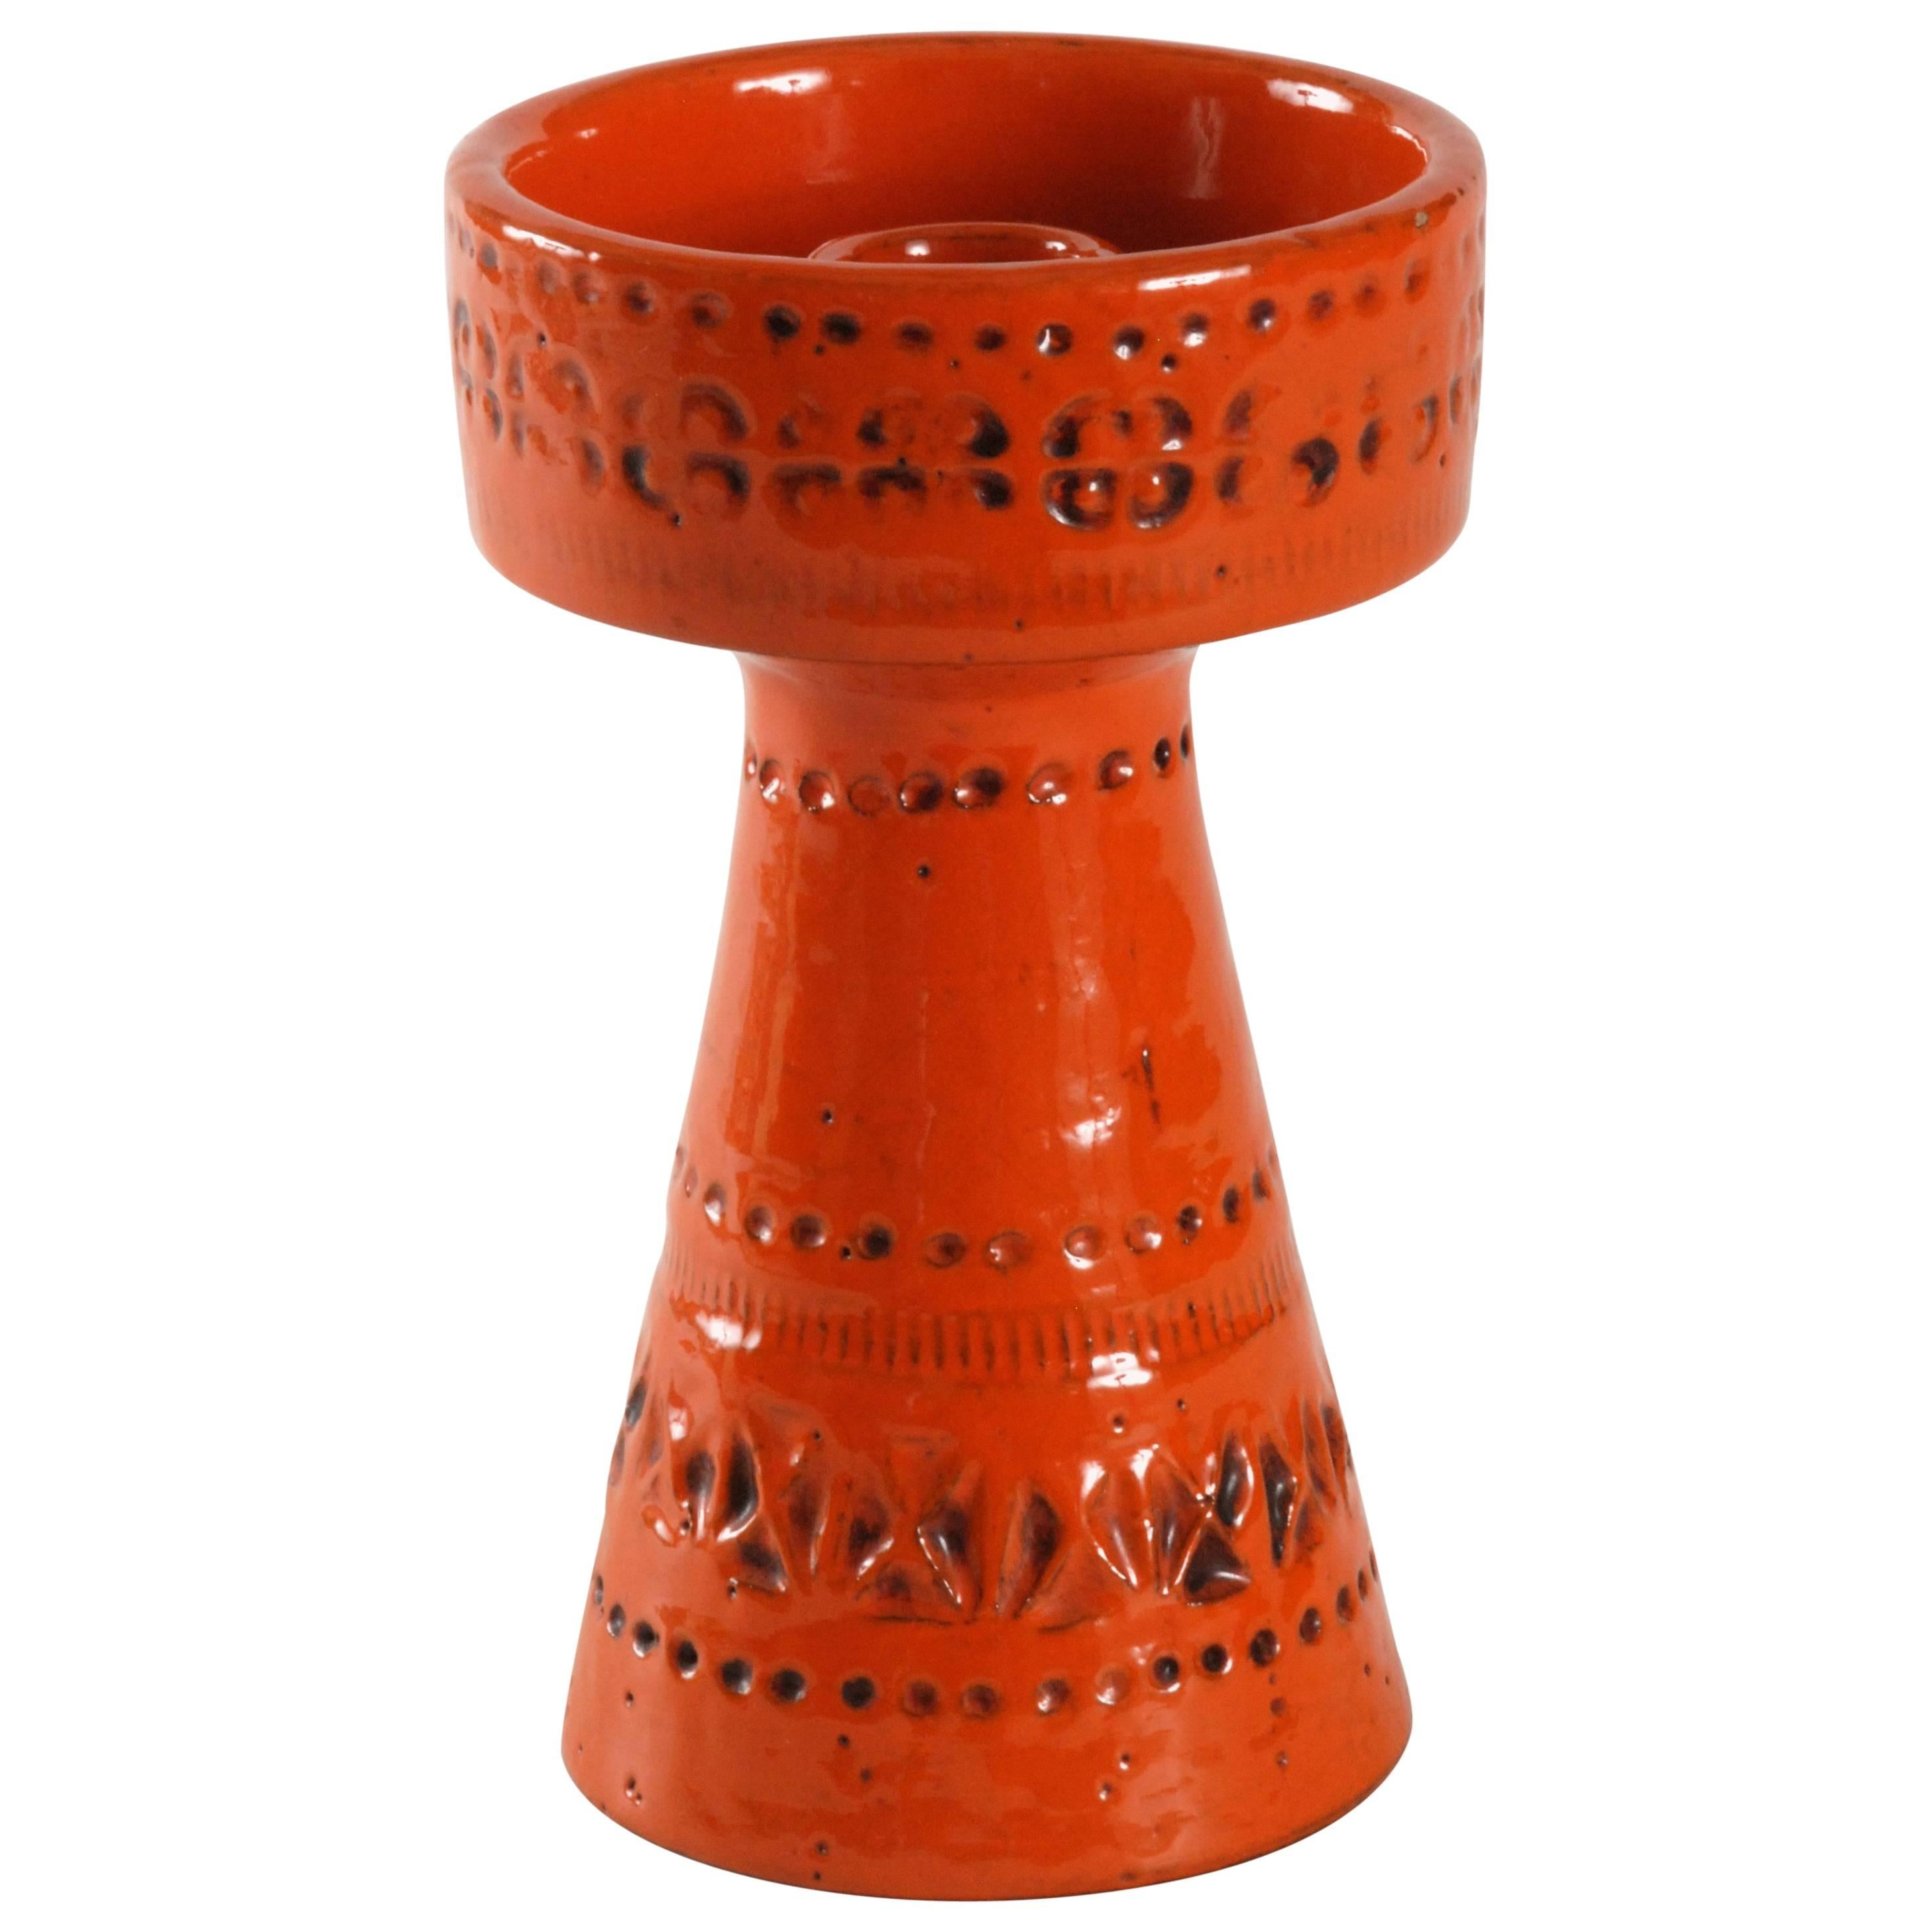 Bitossi Londi Designed Orange Candleholder Italy, circa 1968